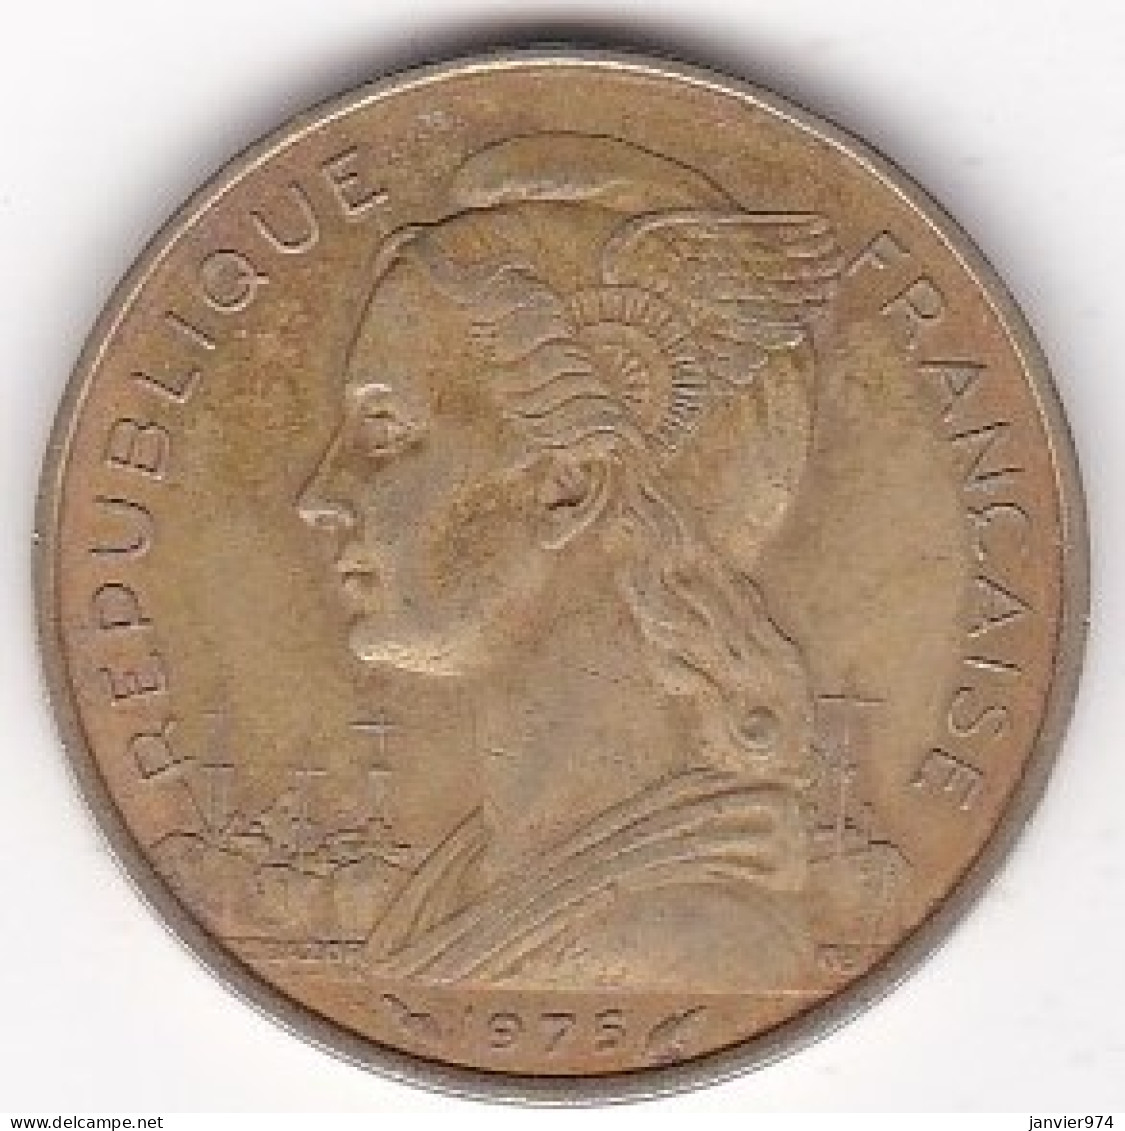 Territoire Français Des Afars Et Des Issas Djibouti 10 Francs 1975 , En Cupro Alu Nickel , Lec# 63 - Dschibuti